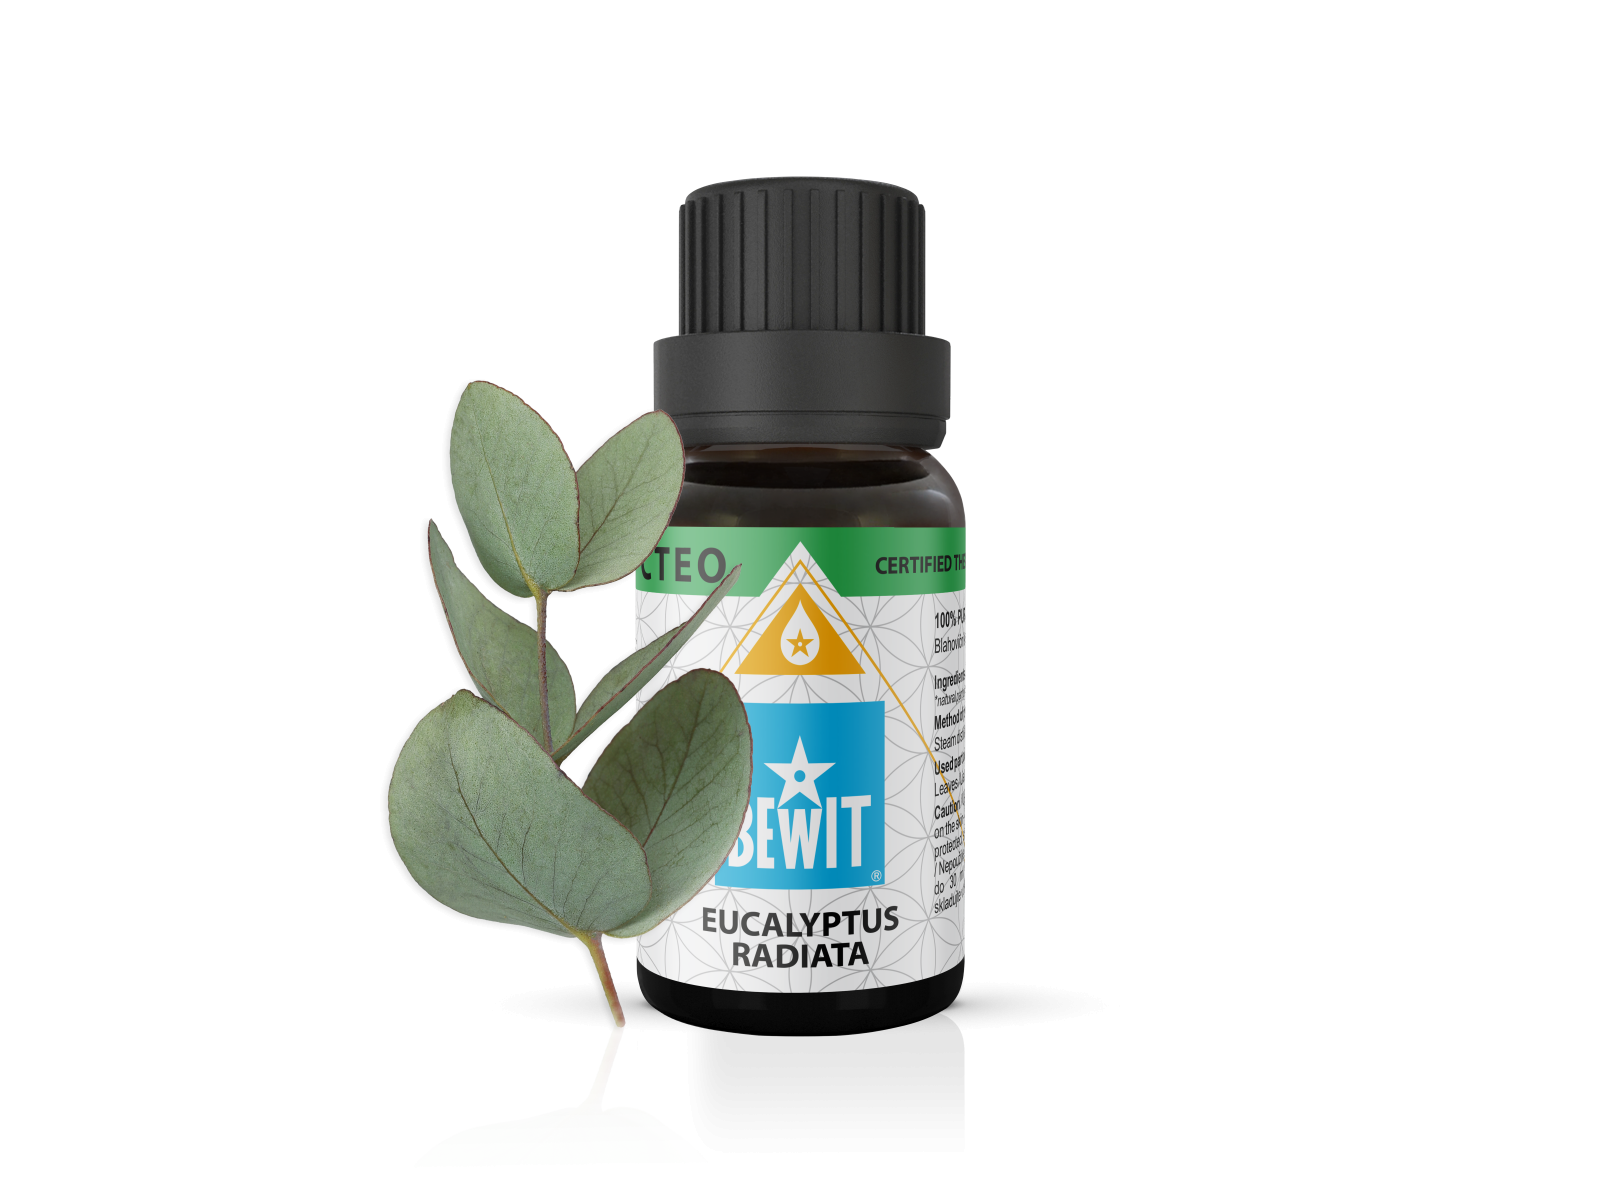 BEWIT Eucalyptus Radiata - 100% pure essential oil